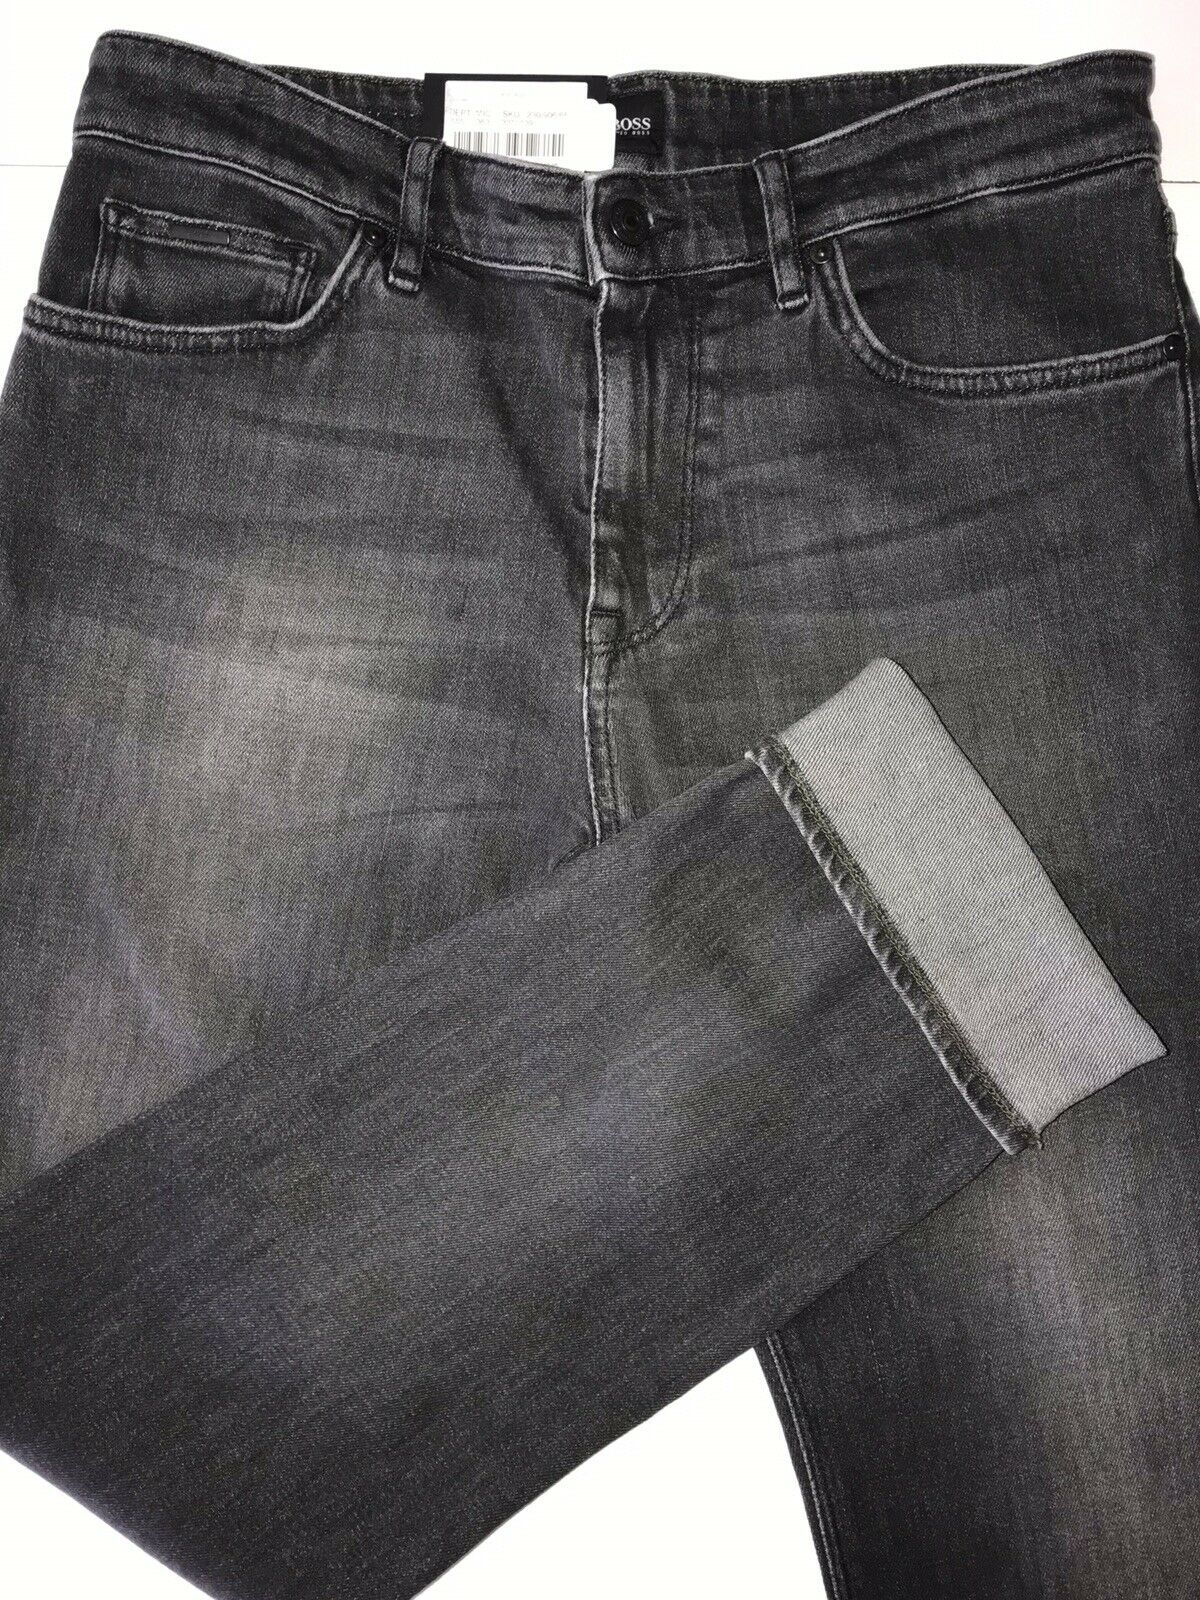 Neu mit Etikett: 178 $ Hugo Boss Herren-Jeans „Maine“ in normaler Passform in Blau, Größe 30/32